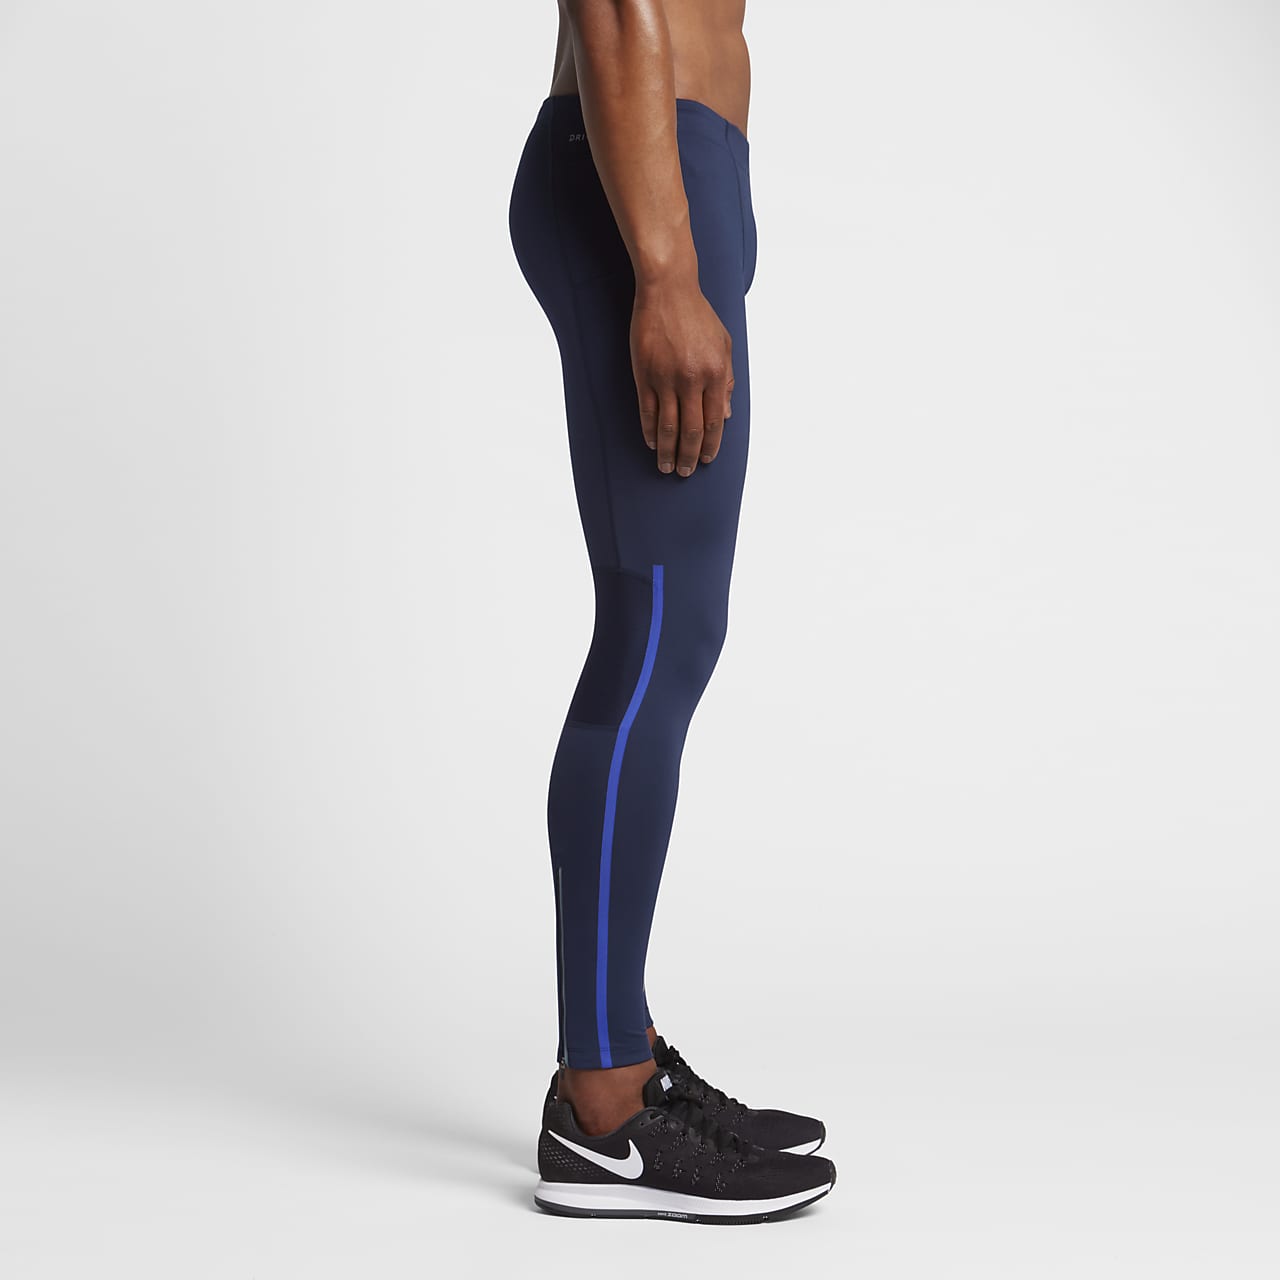 sport pakaian bawahan celana Nike Power Speed Running Tights Blue & Black  Legging Pants